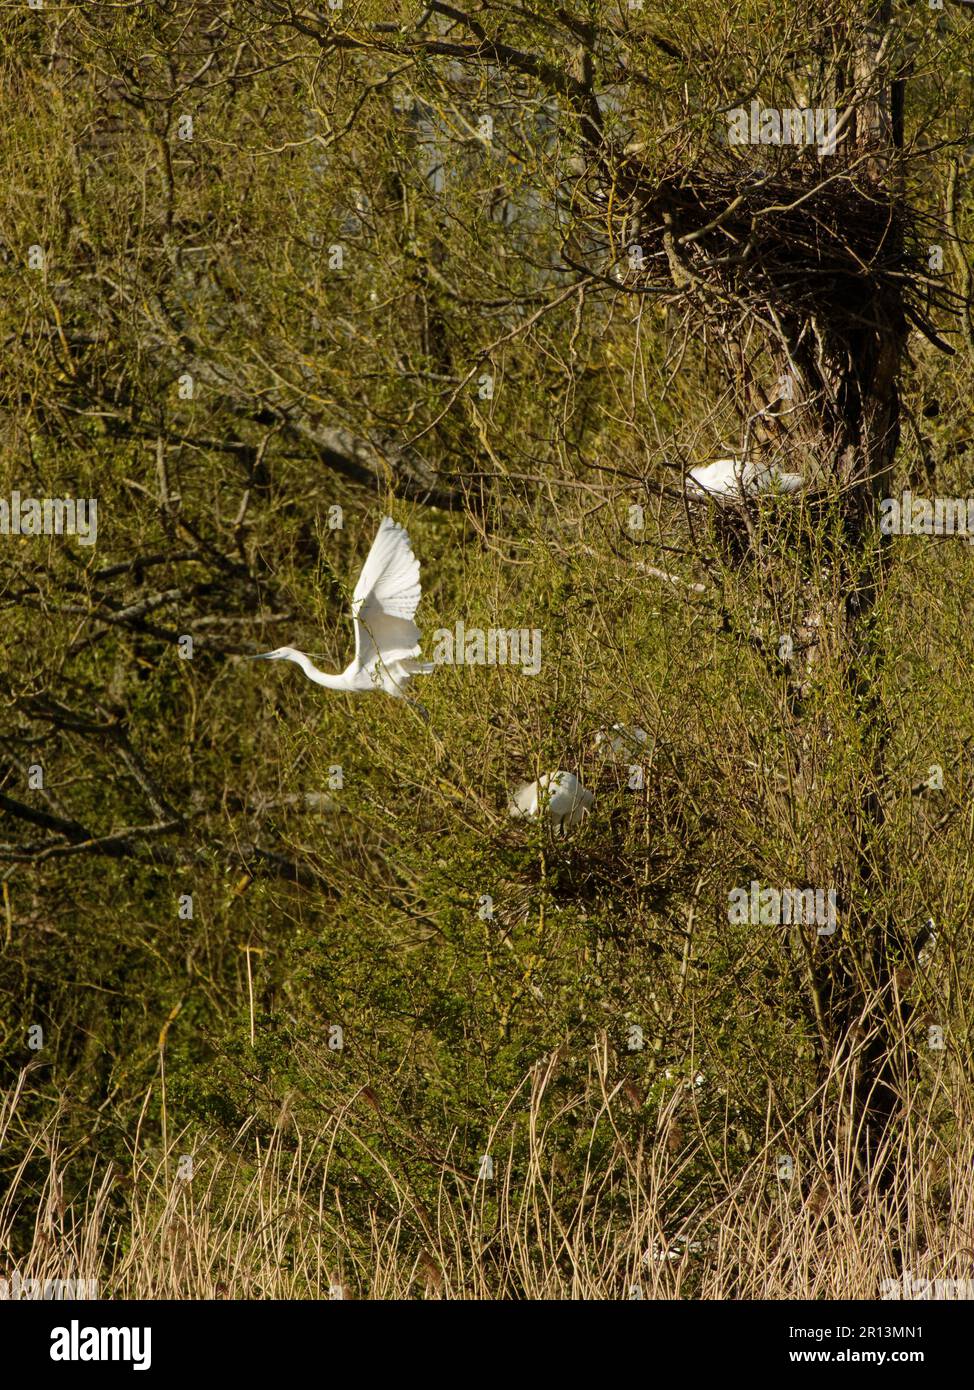 Piccola gretta (Egretta garzetta) che decolora dal suo nido all'interno di una colonia di Willow Trees, Magor Marsh, Gwent Levels, Monmouthshire, Galles, Regno Unito, aprile. Foto Stock